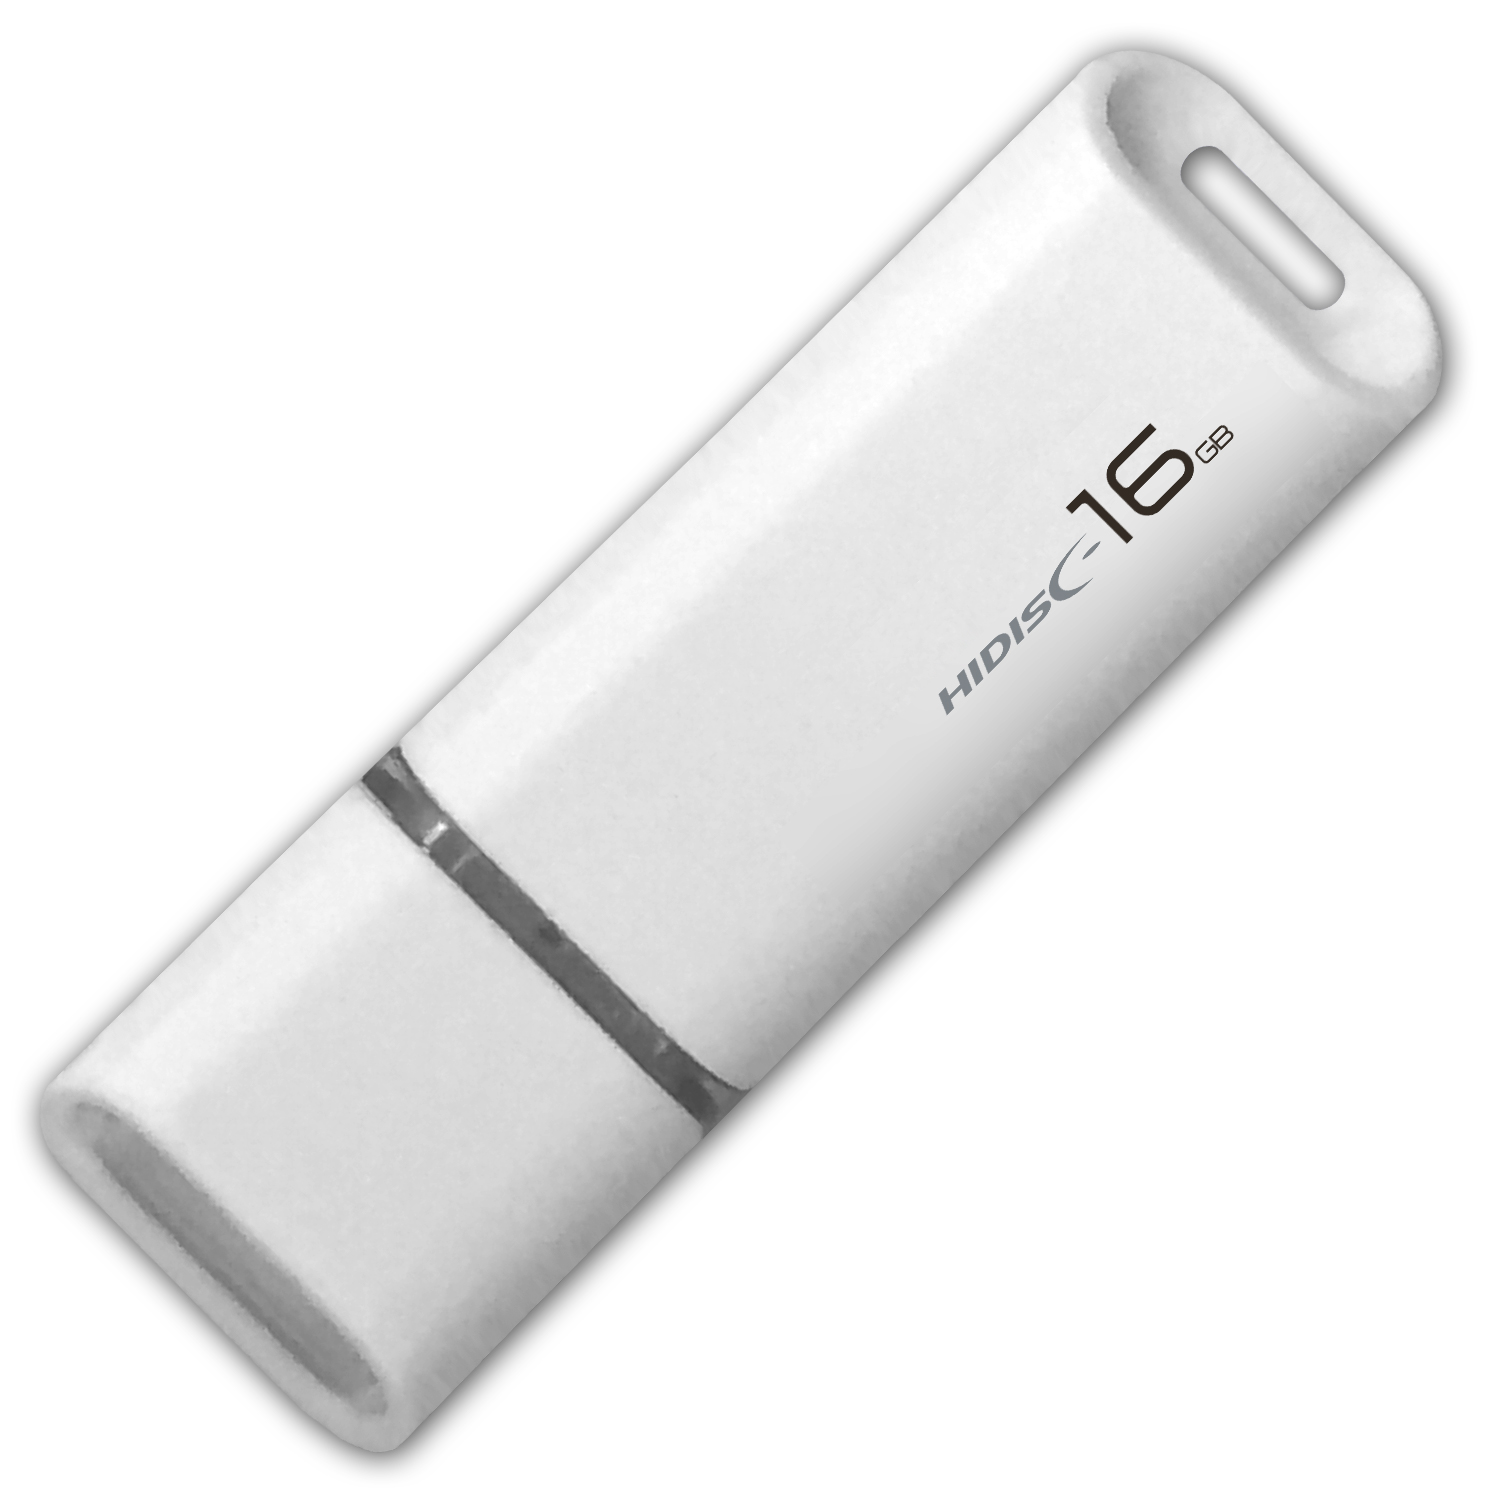 HIDISC USB 2.0 フラッシュドライブ 16GB 白 キャップ式